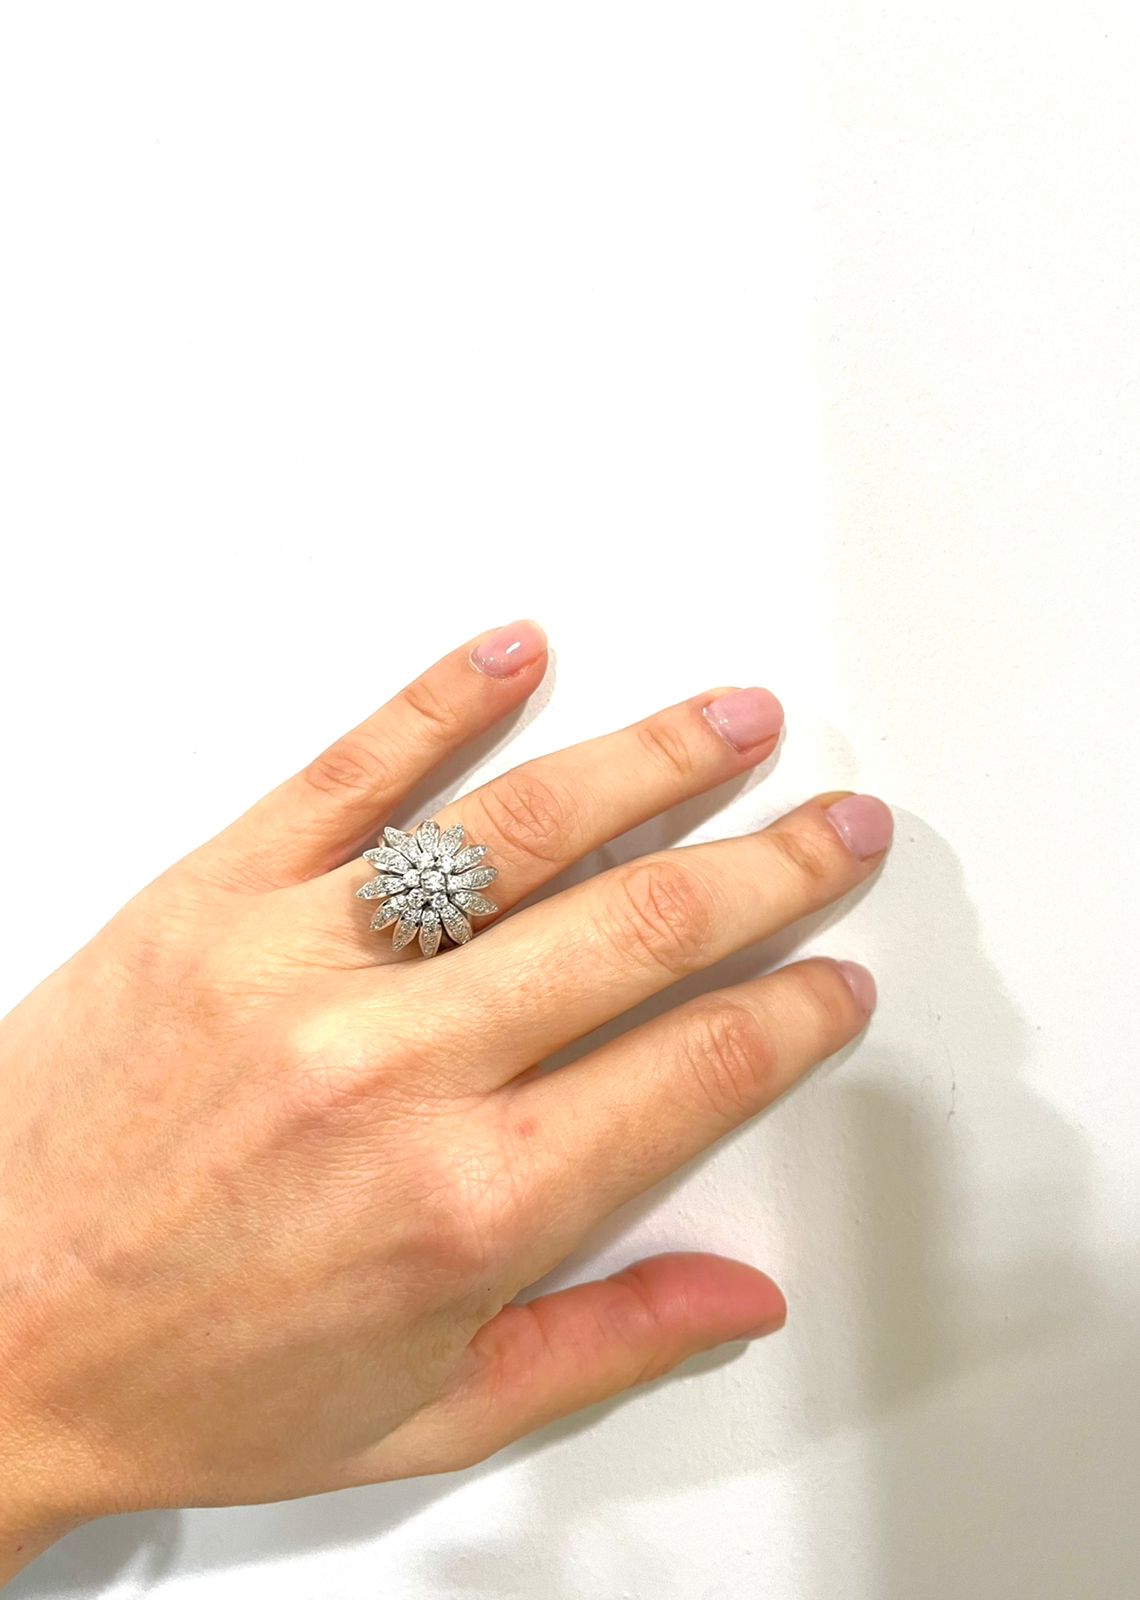 Μοναδικό χειροποίητο δαχτυλίδι σε λευκό χρυσό Κ18 με στρογγυλά διαμάντια μπριγιάν βάρους 1,00ct